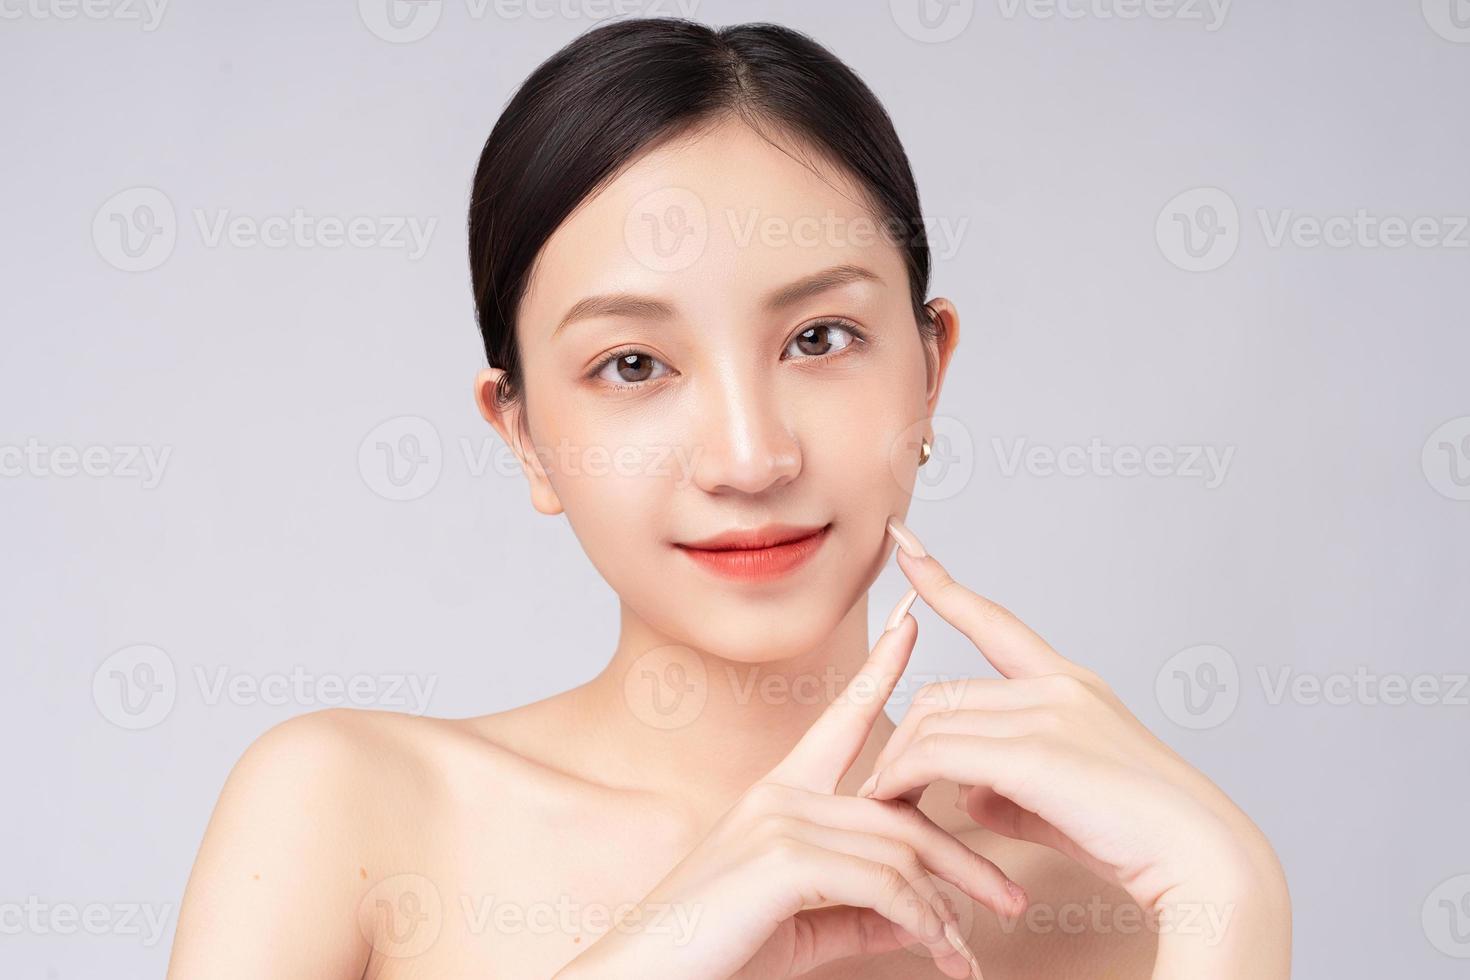 la bella donna asiatica si sente felice con una bella pelle sana foto